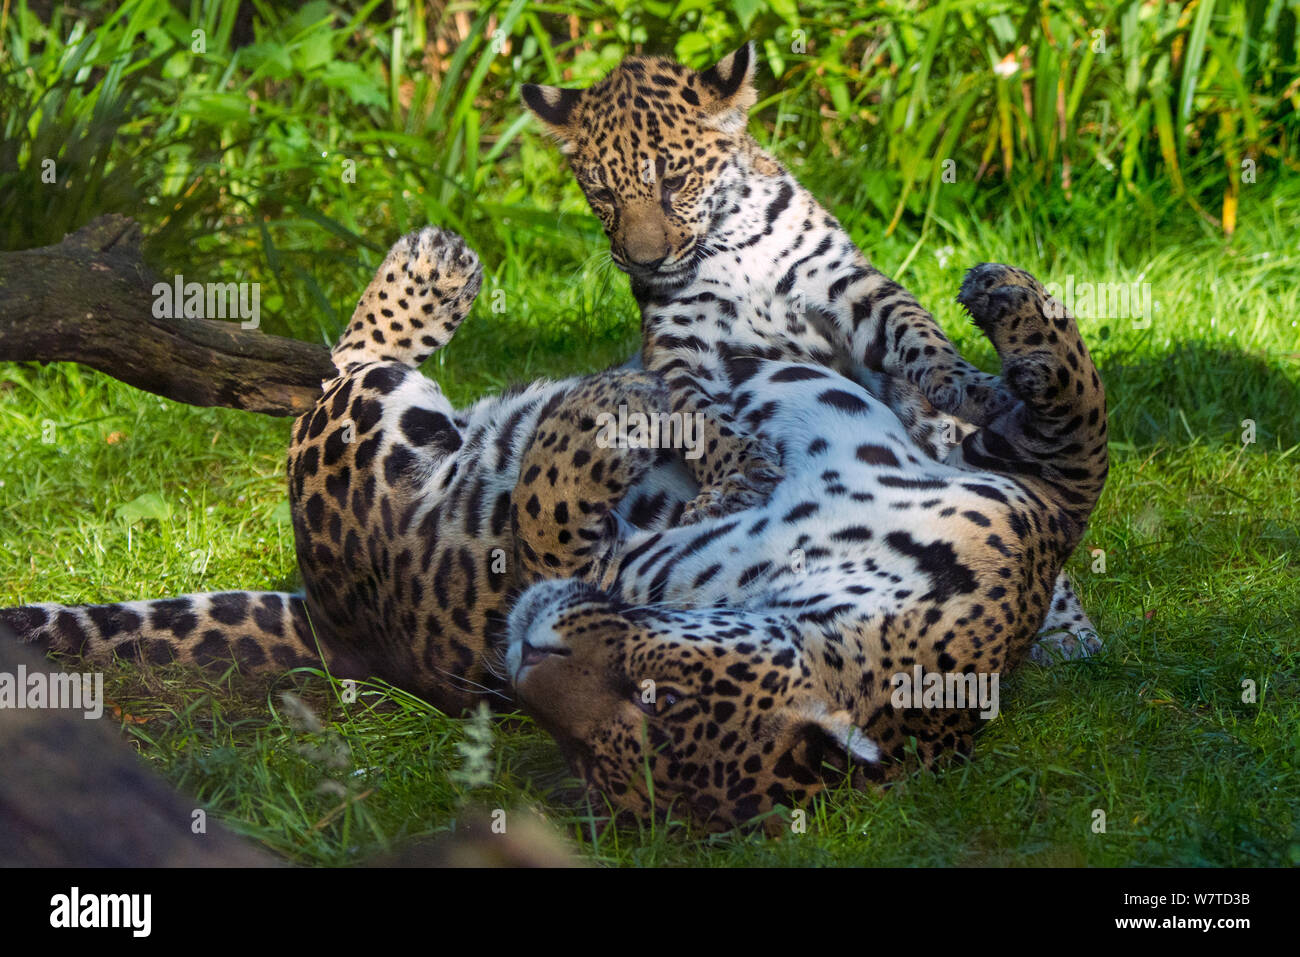 Jaguar femmina (Panthera onca) giocando con il suo cucciolo, captive, nativo di America Centrale e Meridionale. Foto Stock